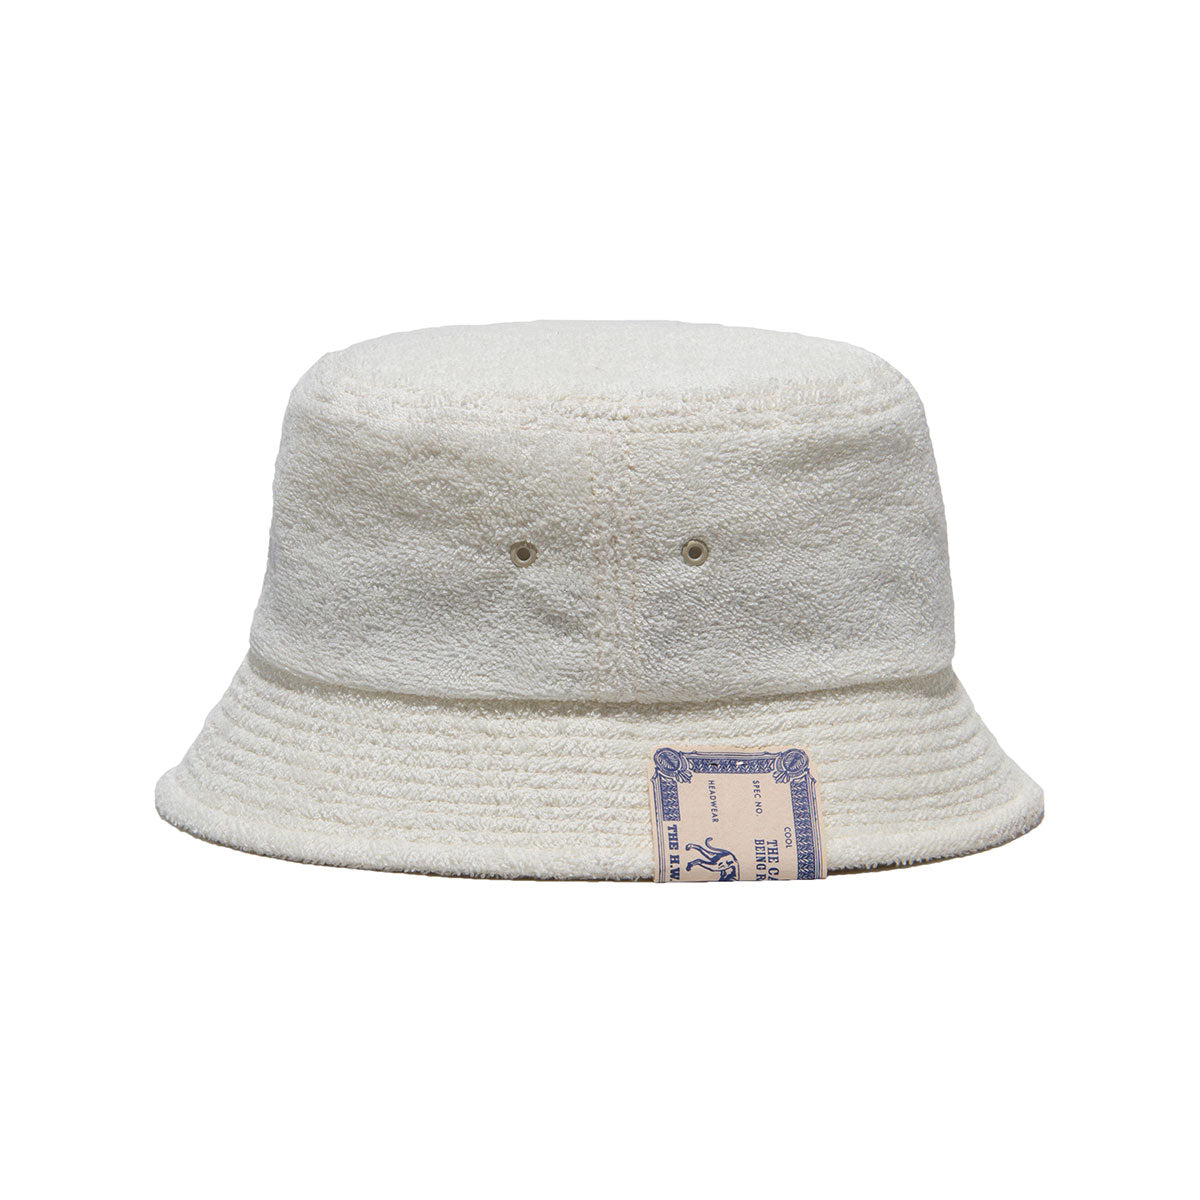 Pile Trucker Hat, White